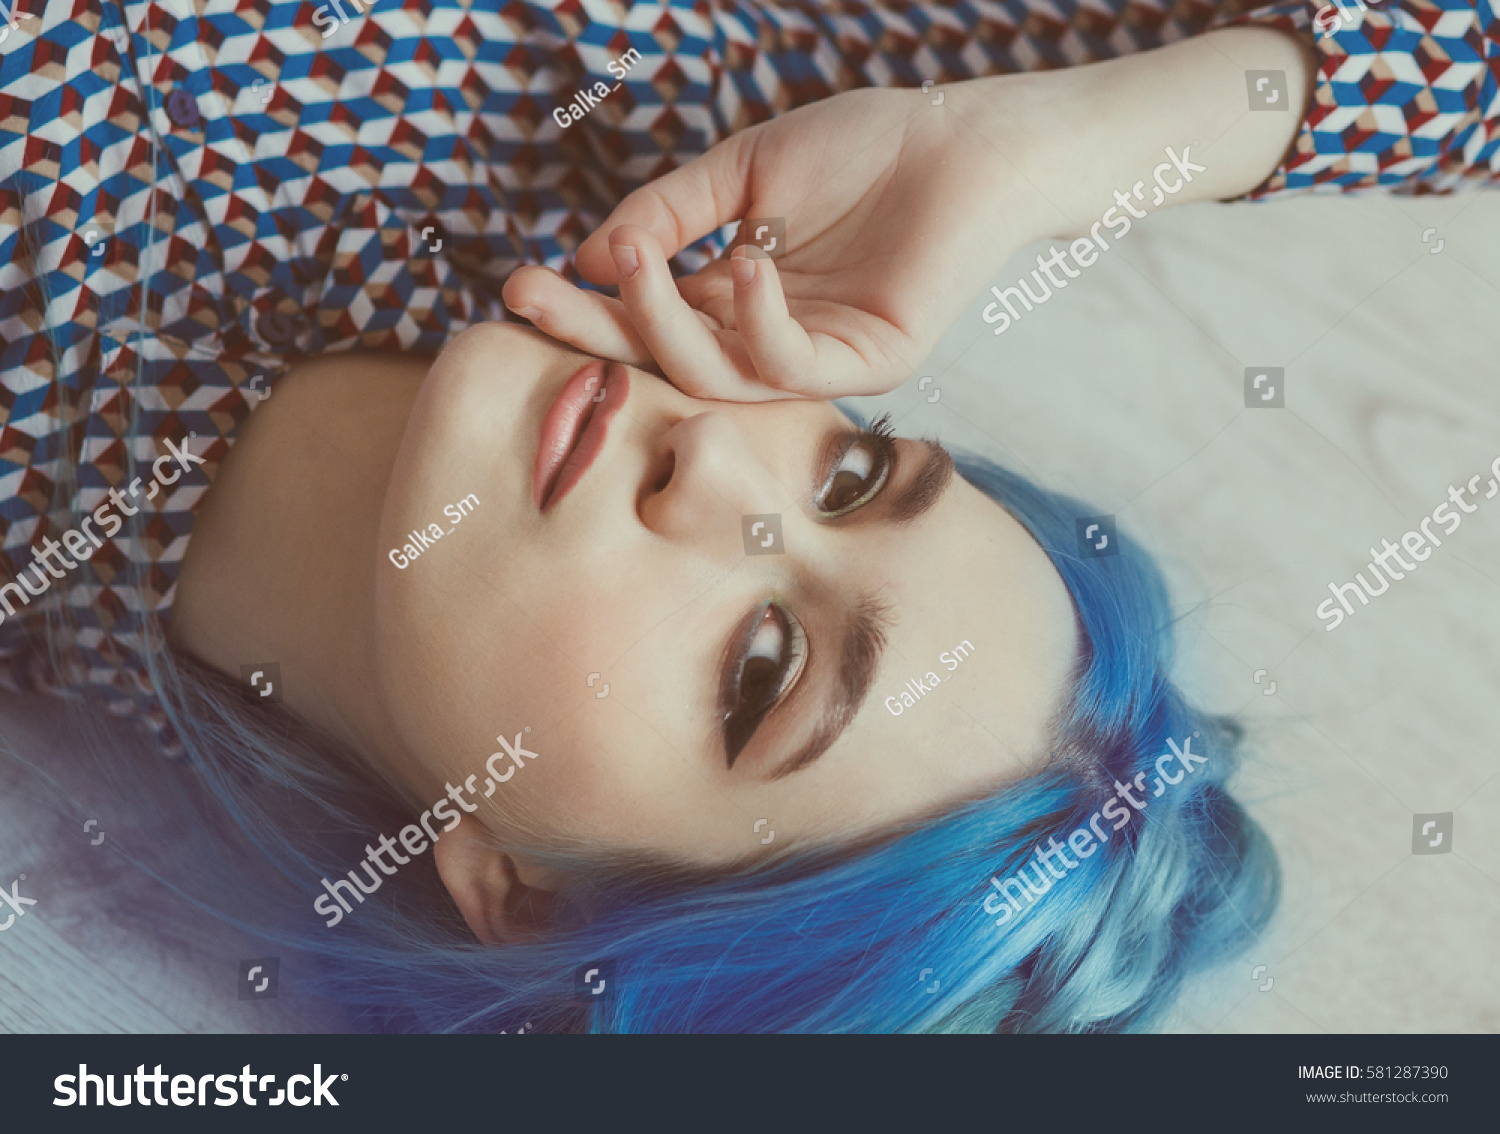 Mermaid Blue Hair Man - Pinterest - wide 7